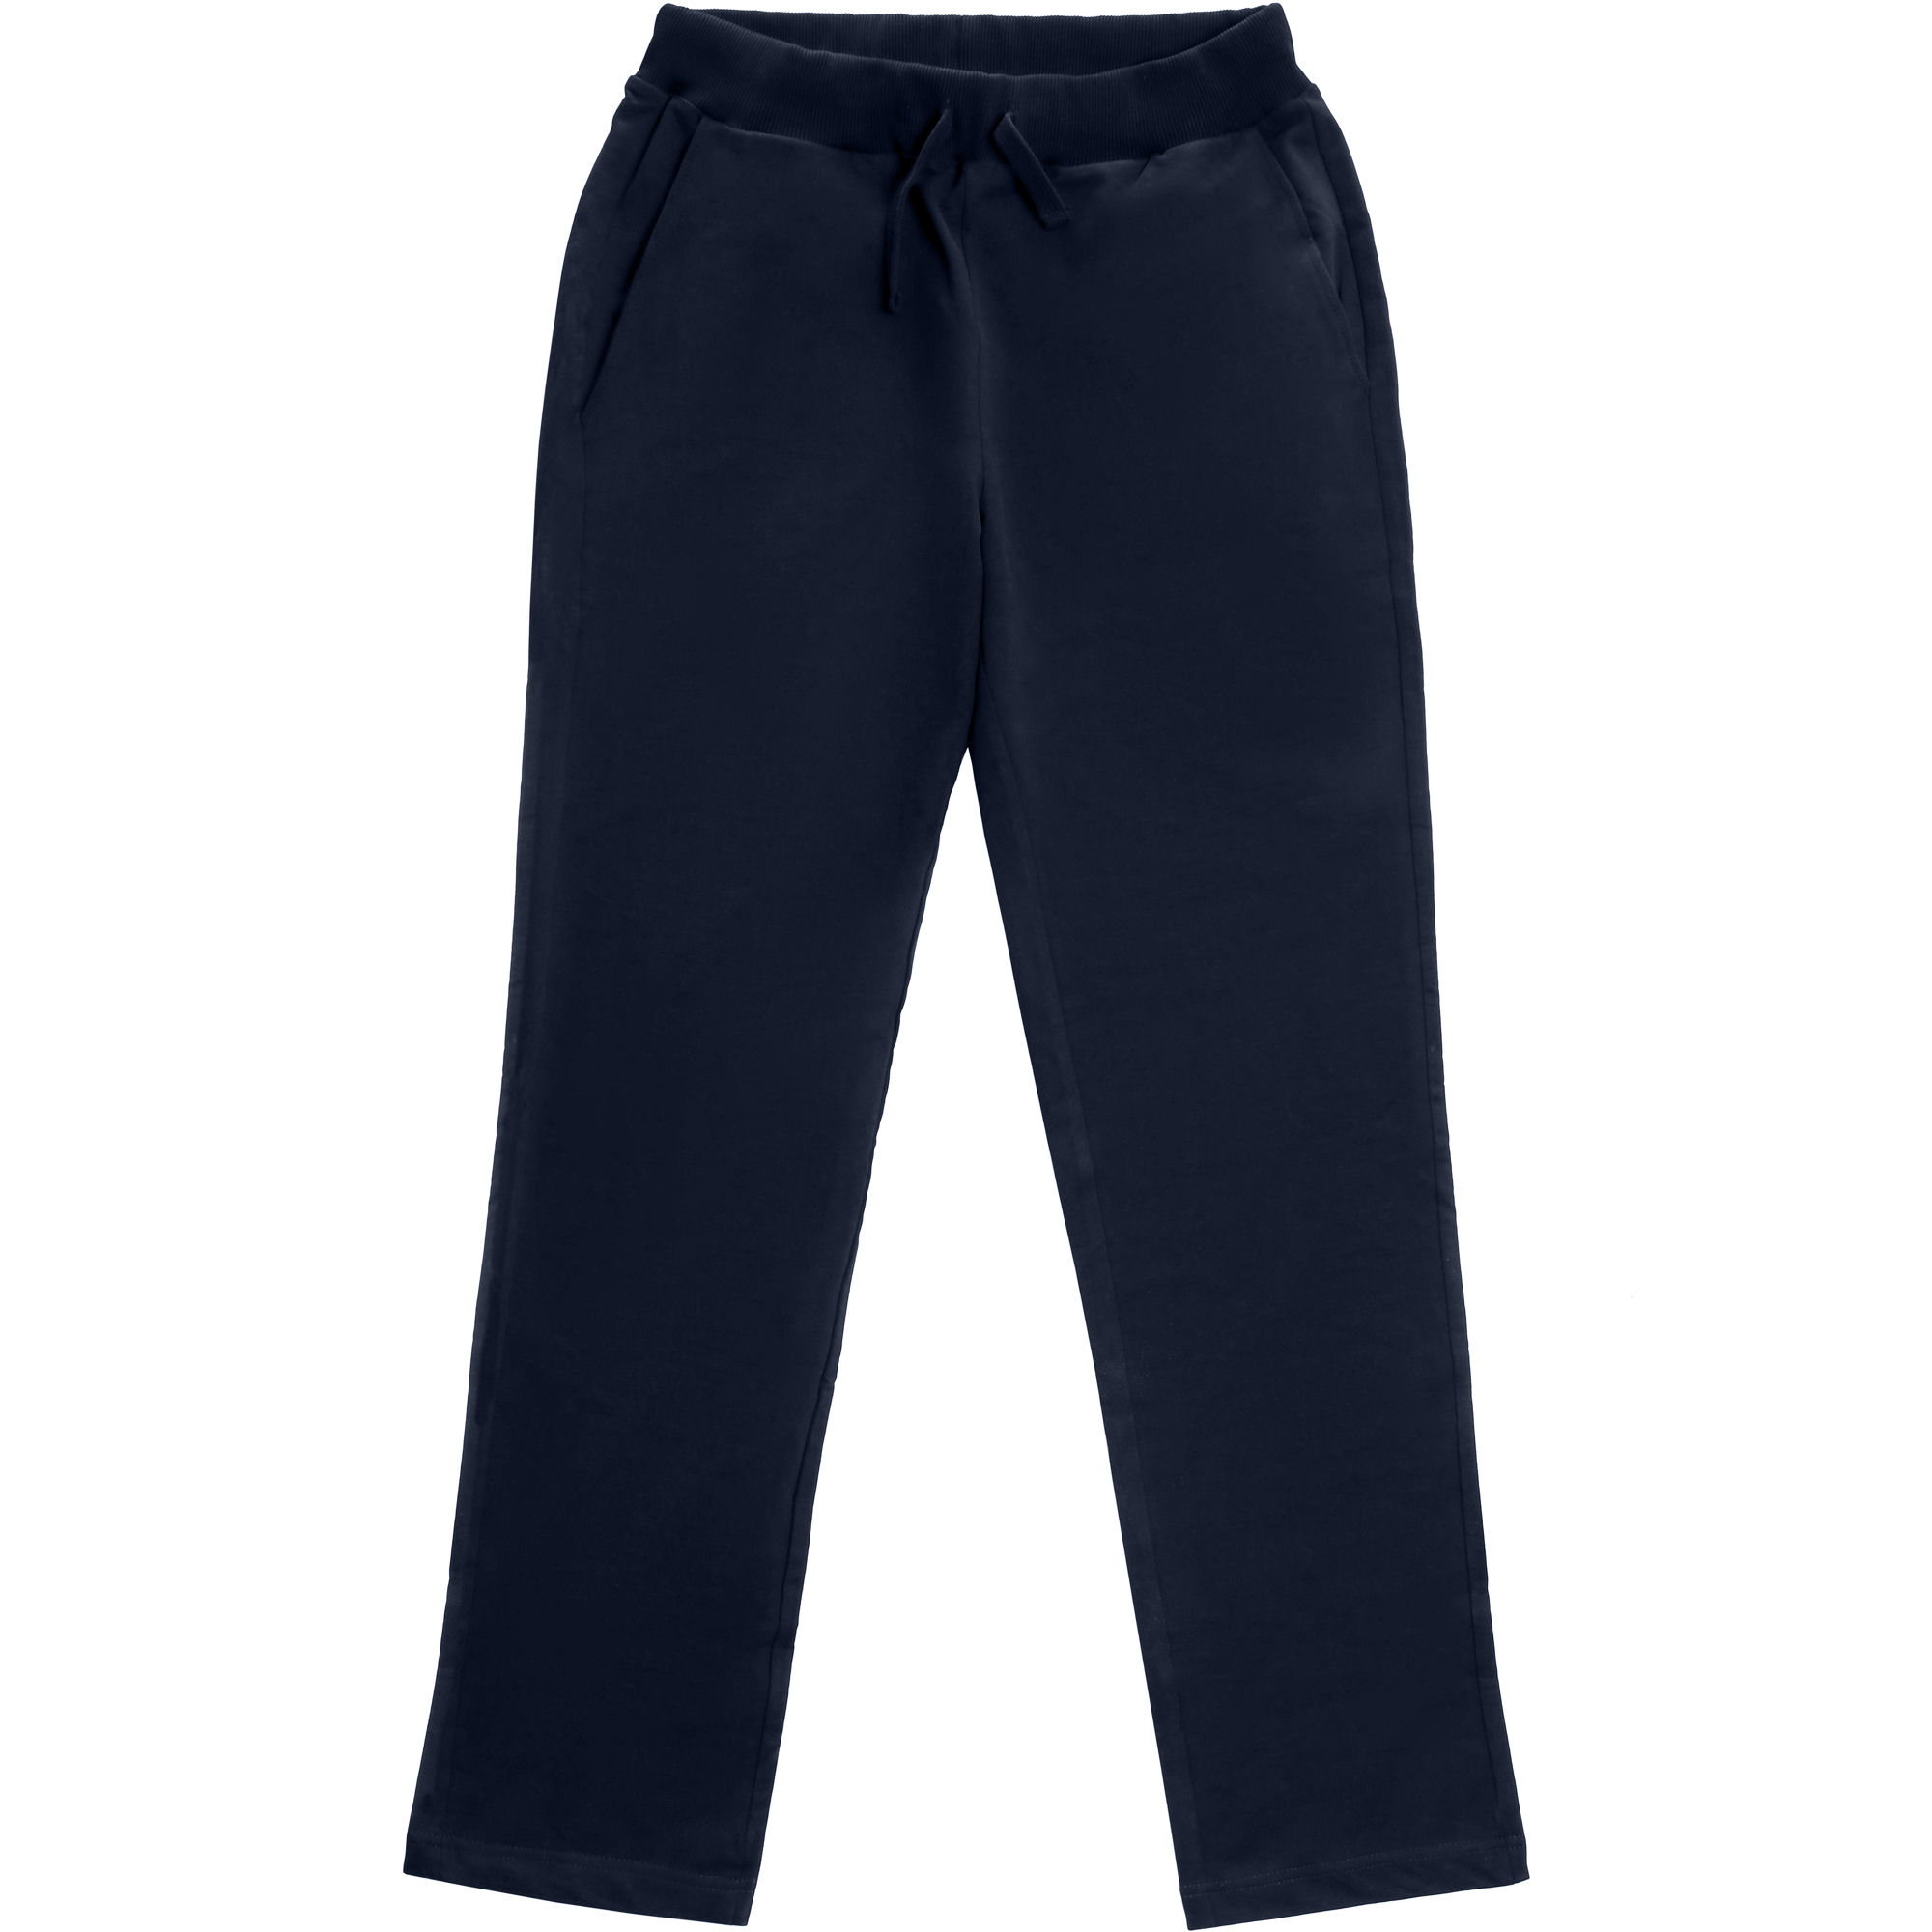 Мужские брюки Birlik тёмно-синие, цвет тёмно-синий, размер M